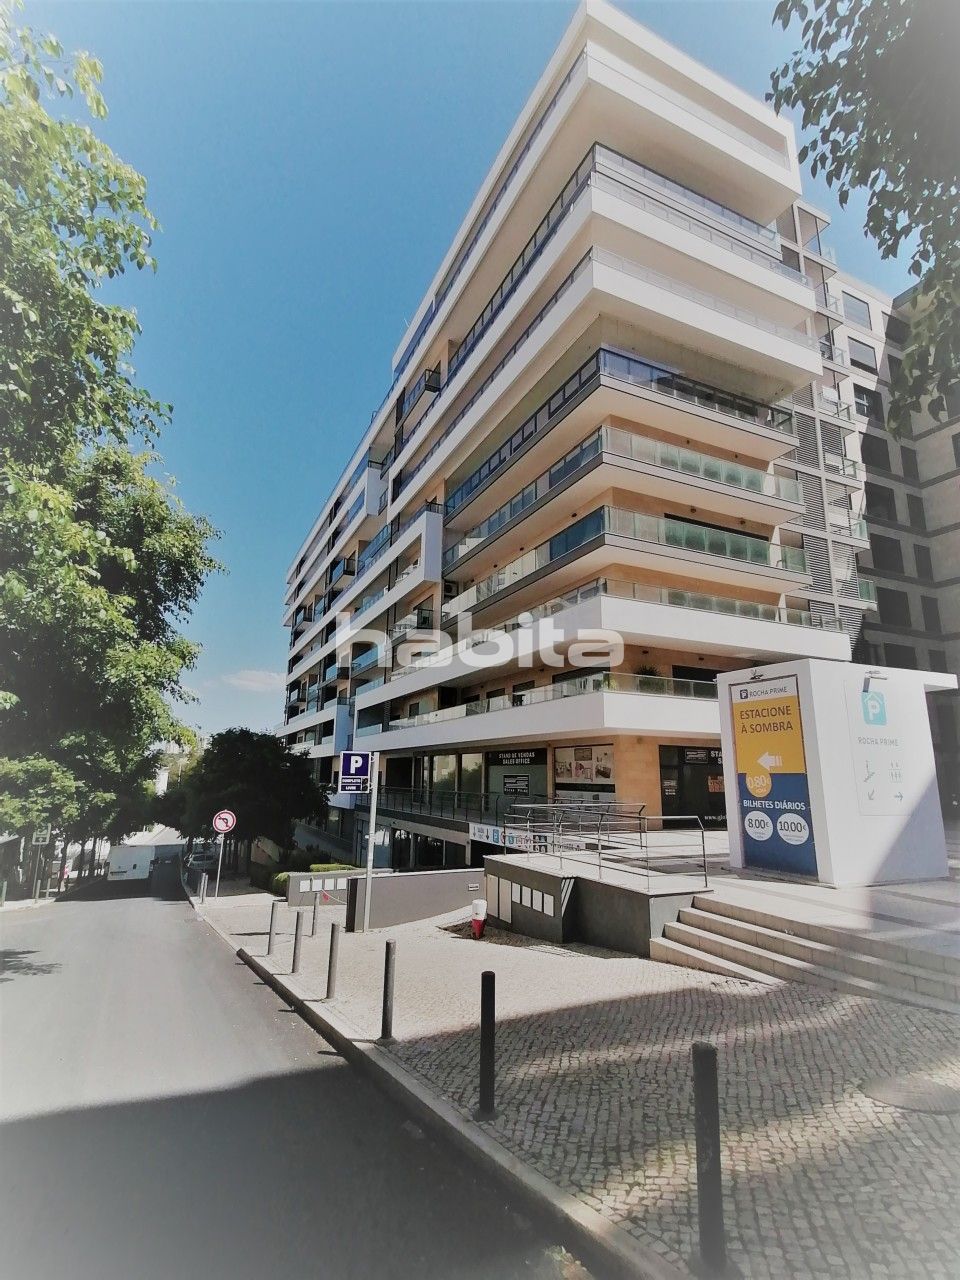 Apartment in Portimao, Portugal, 123.95 sq.m - picture 1